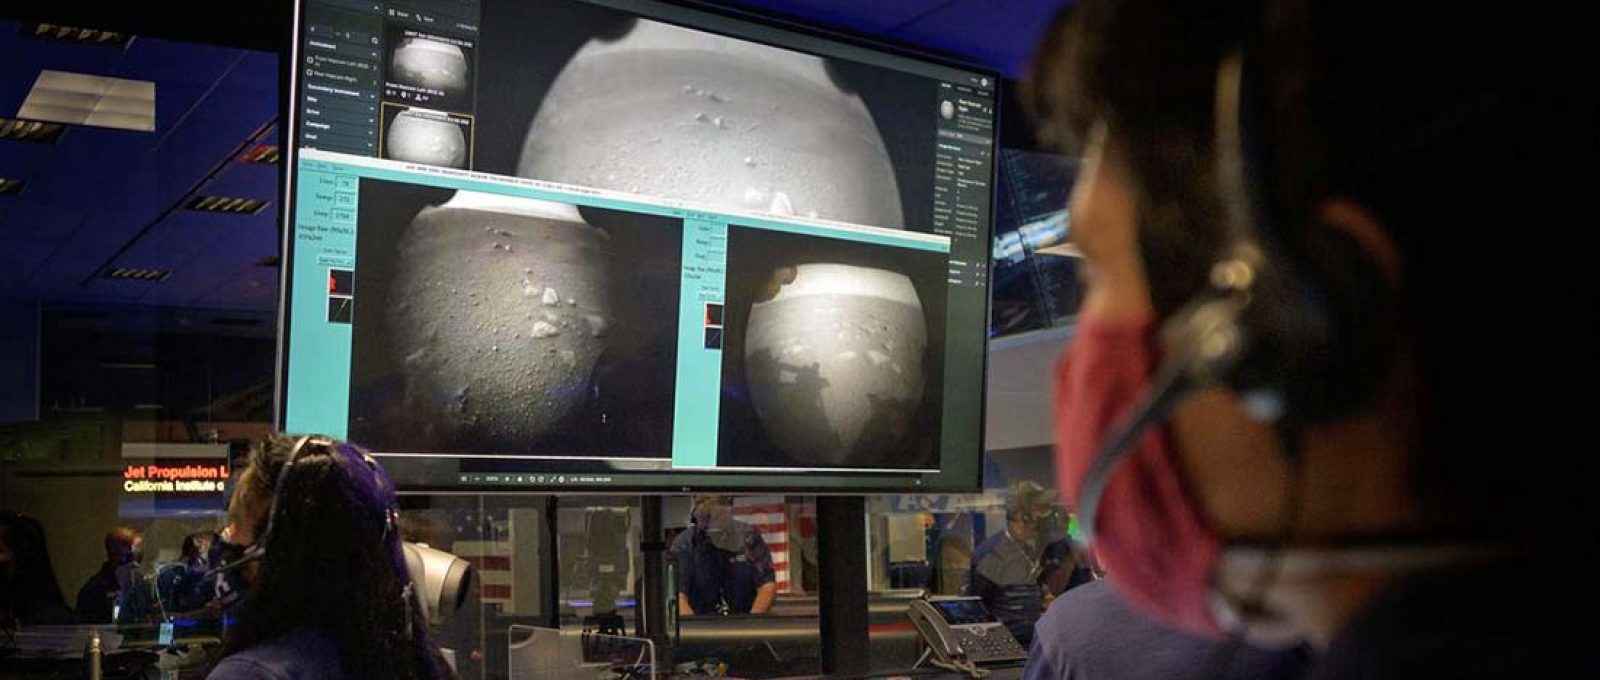 Membros da equipe Mars Perseverance  Rover da NASA observam as primeiras imagens que chegam logo após o pouso em Marte, em 18 de fevereiro de 2021 (Foto: Bill Ingalls/NASA).